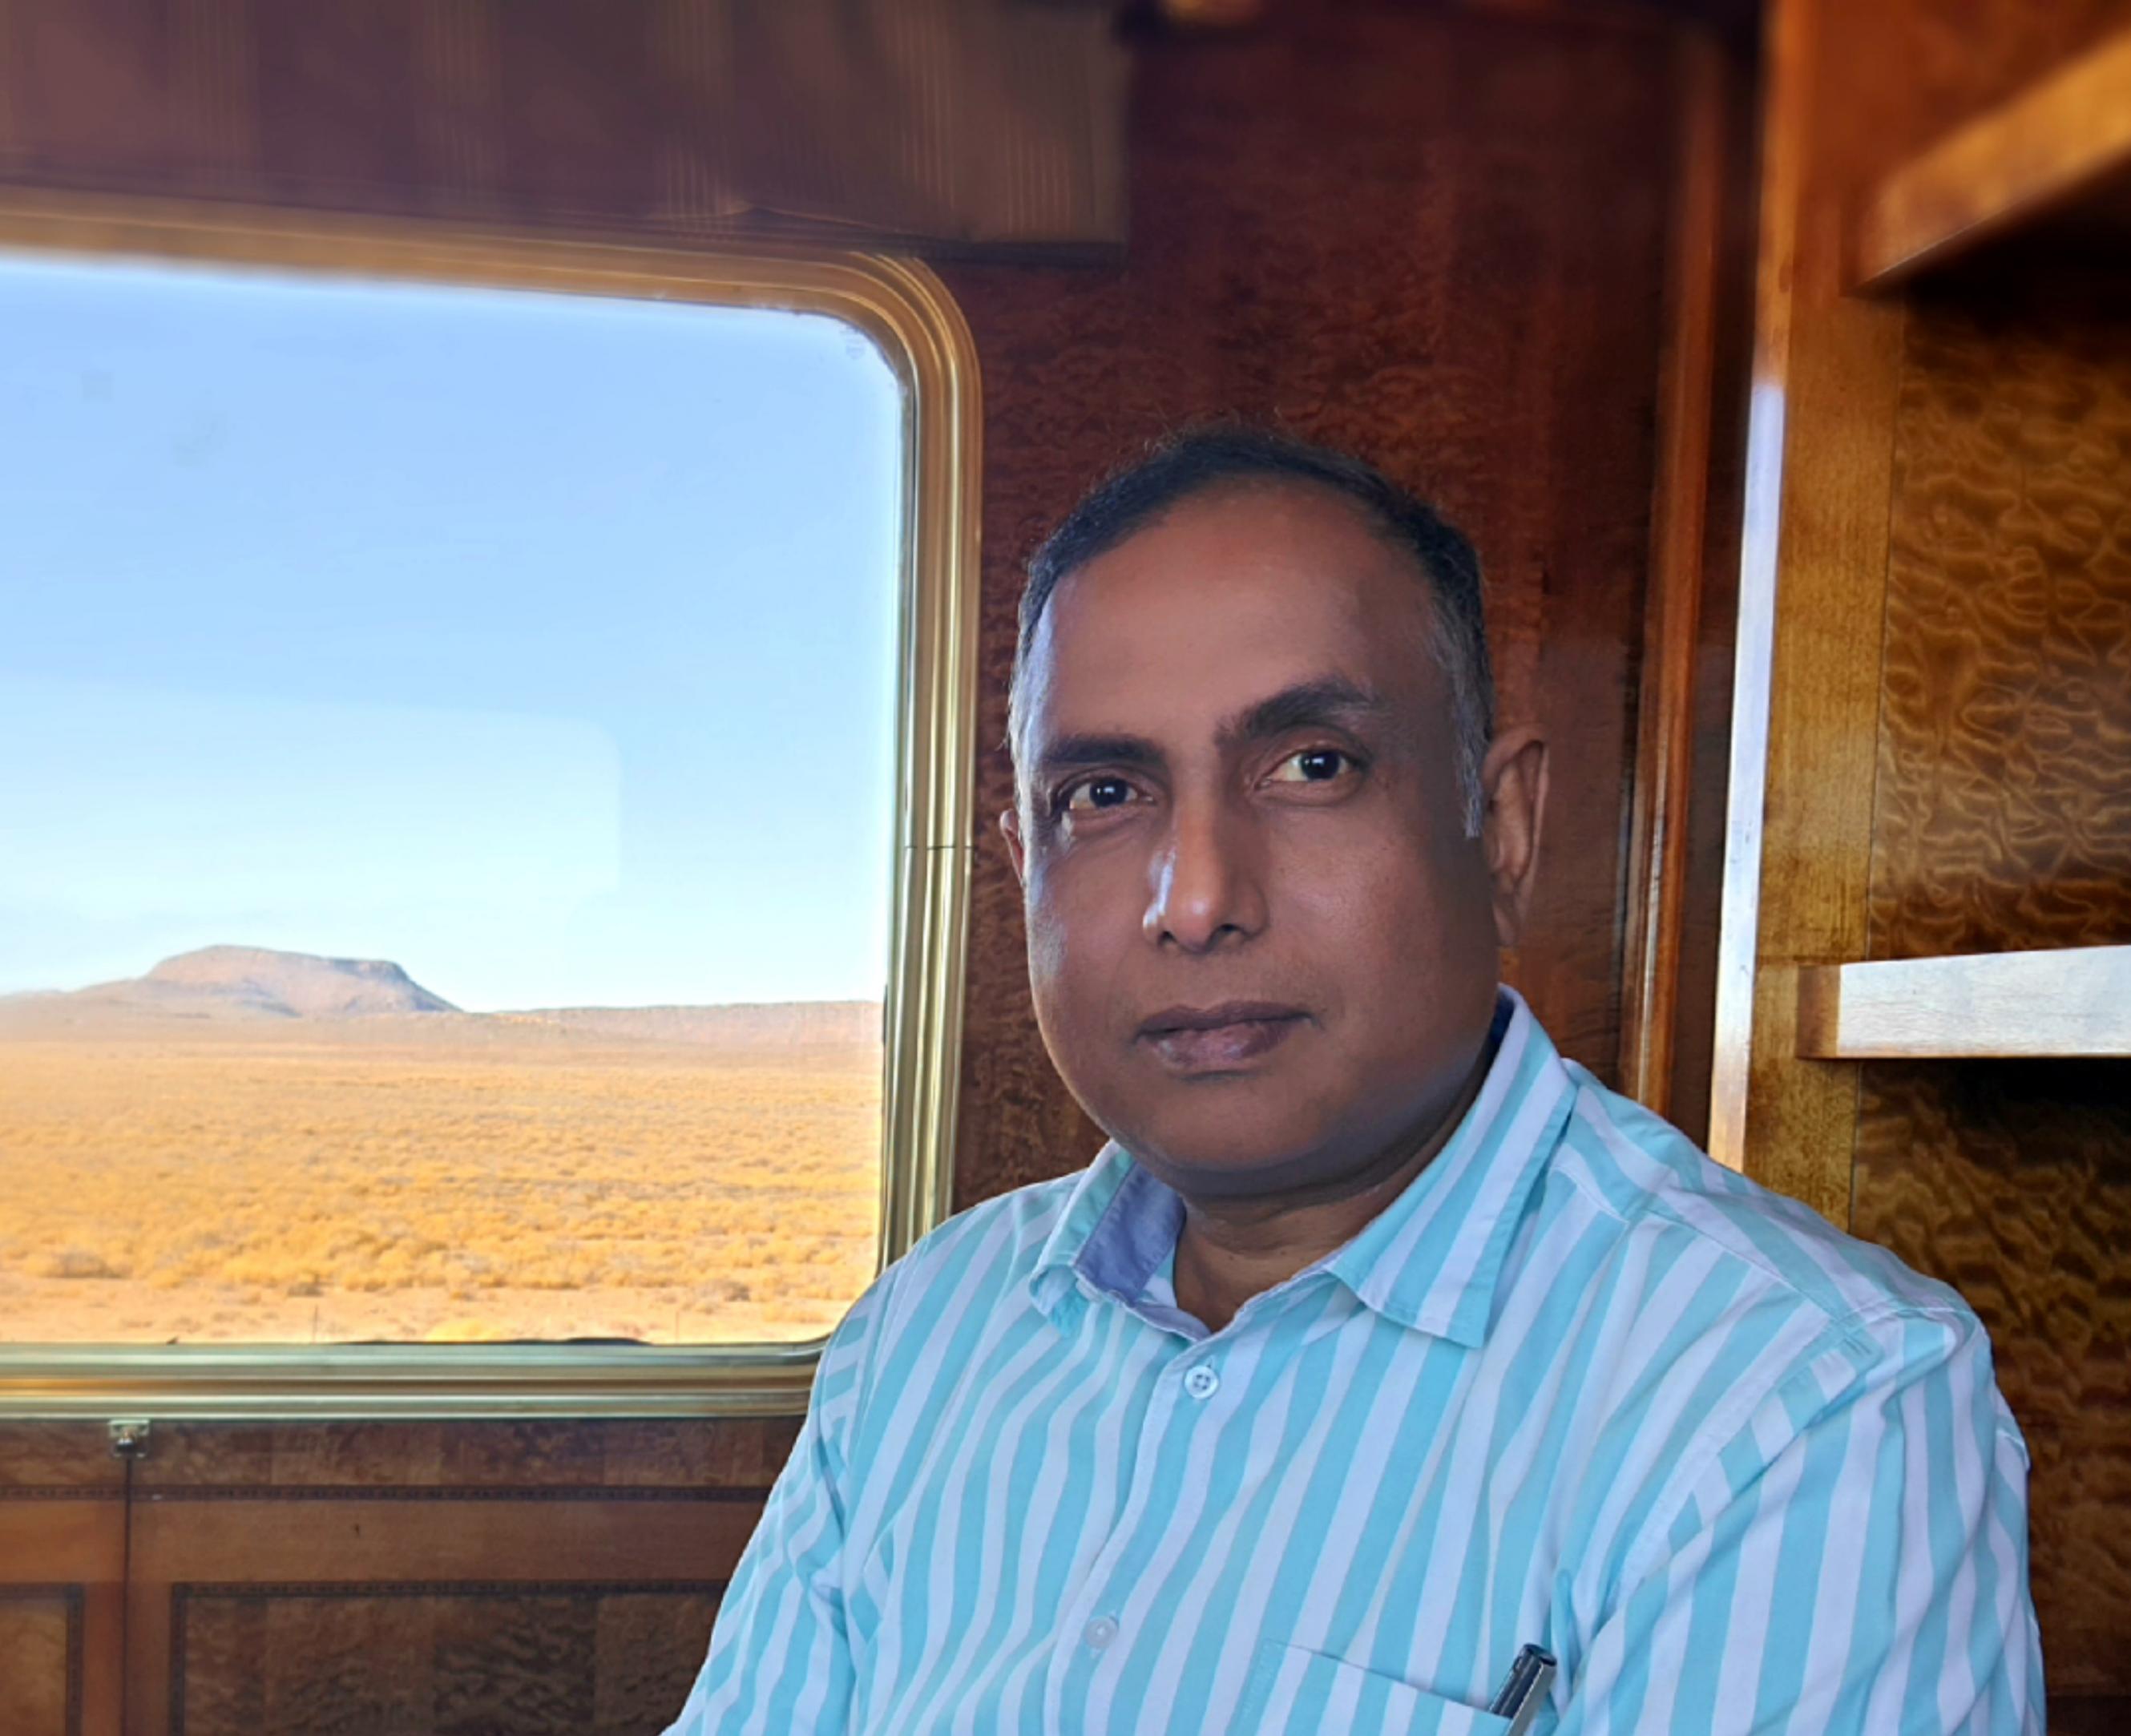 Ein Mann schräg von der Seite im Halbportrait, offenbar im Zug. In der linken Bildhälfte ist ein Fenster, der Blick geht auf eine sehr karge Landschaft, im Hintergrund ein Tafelberg.